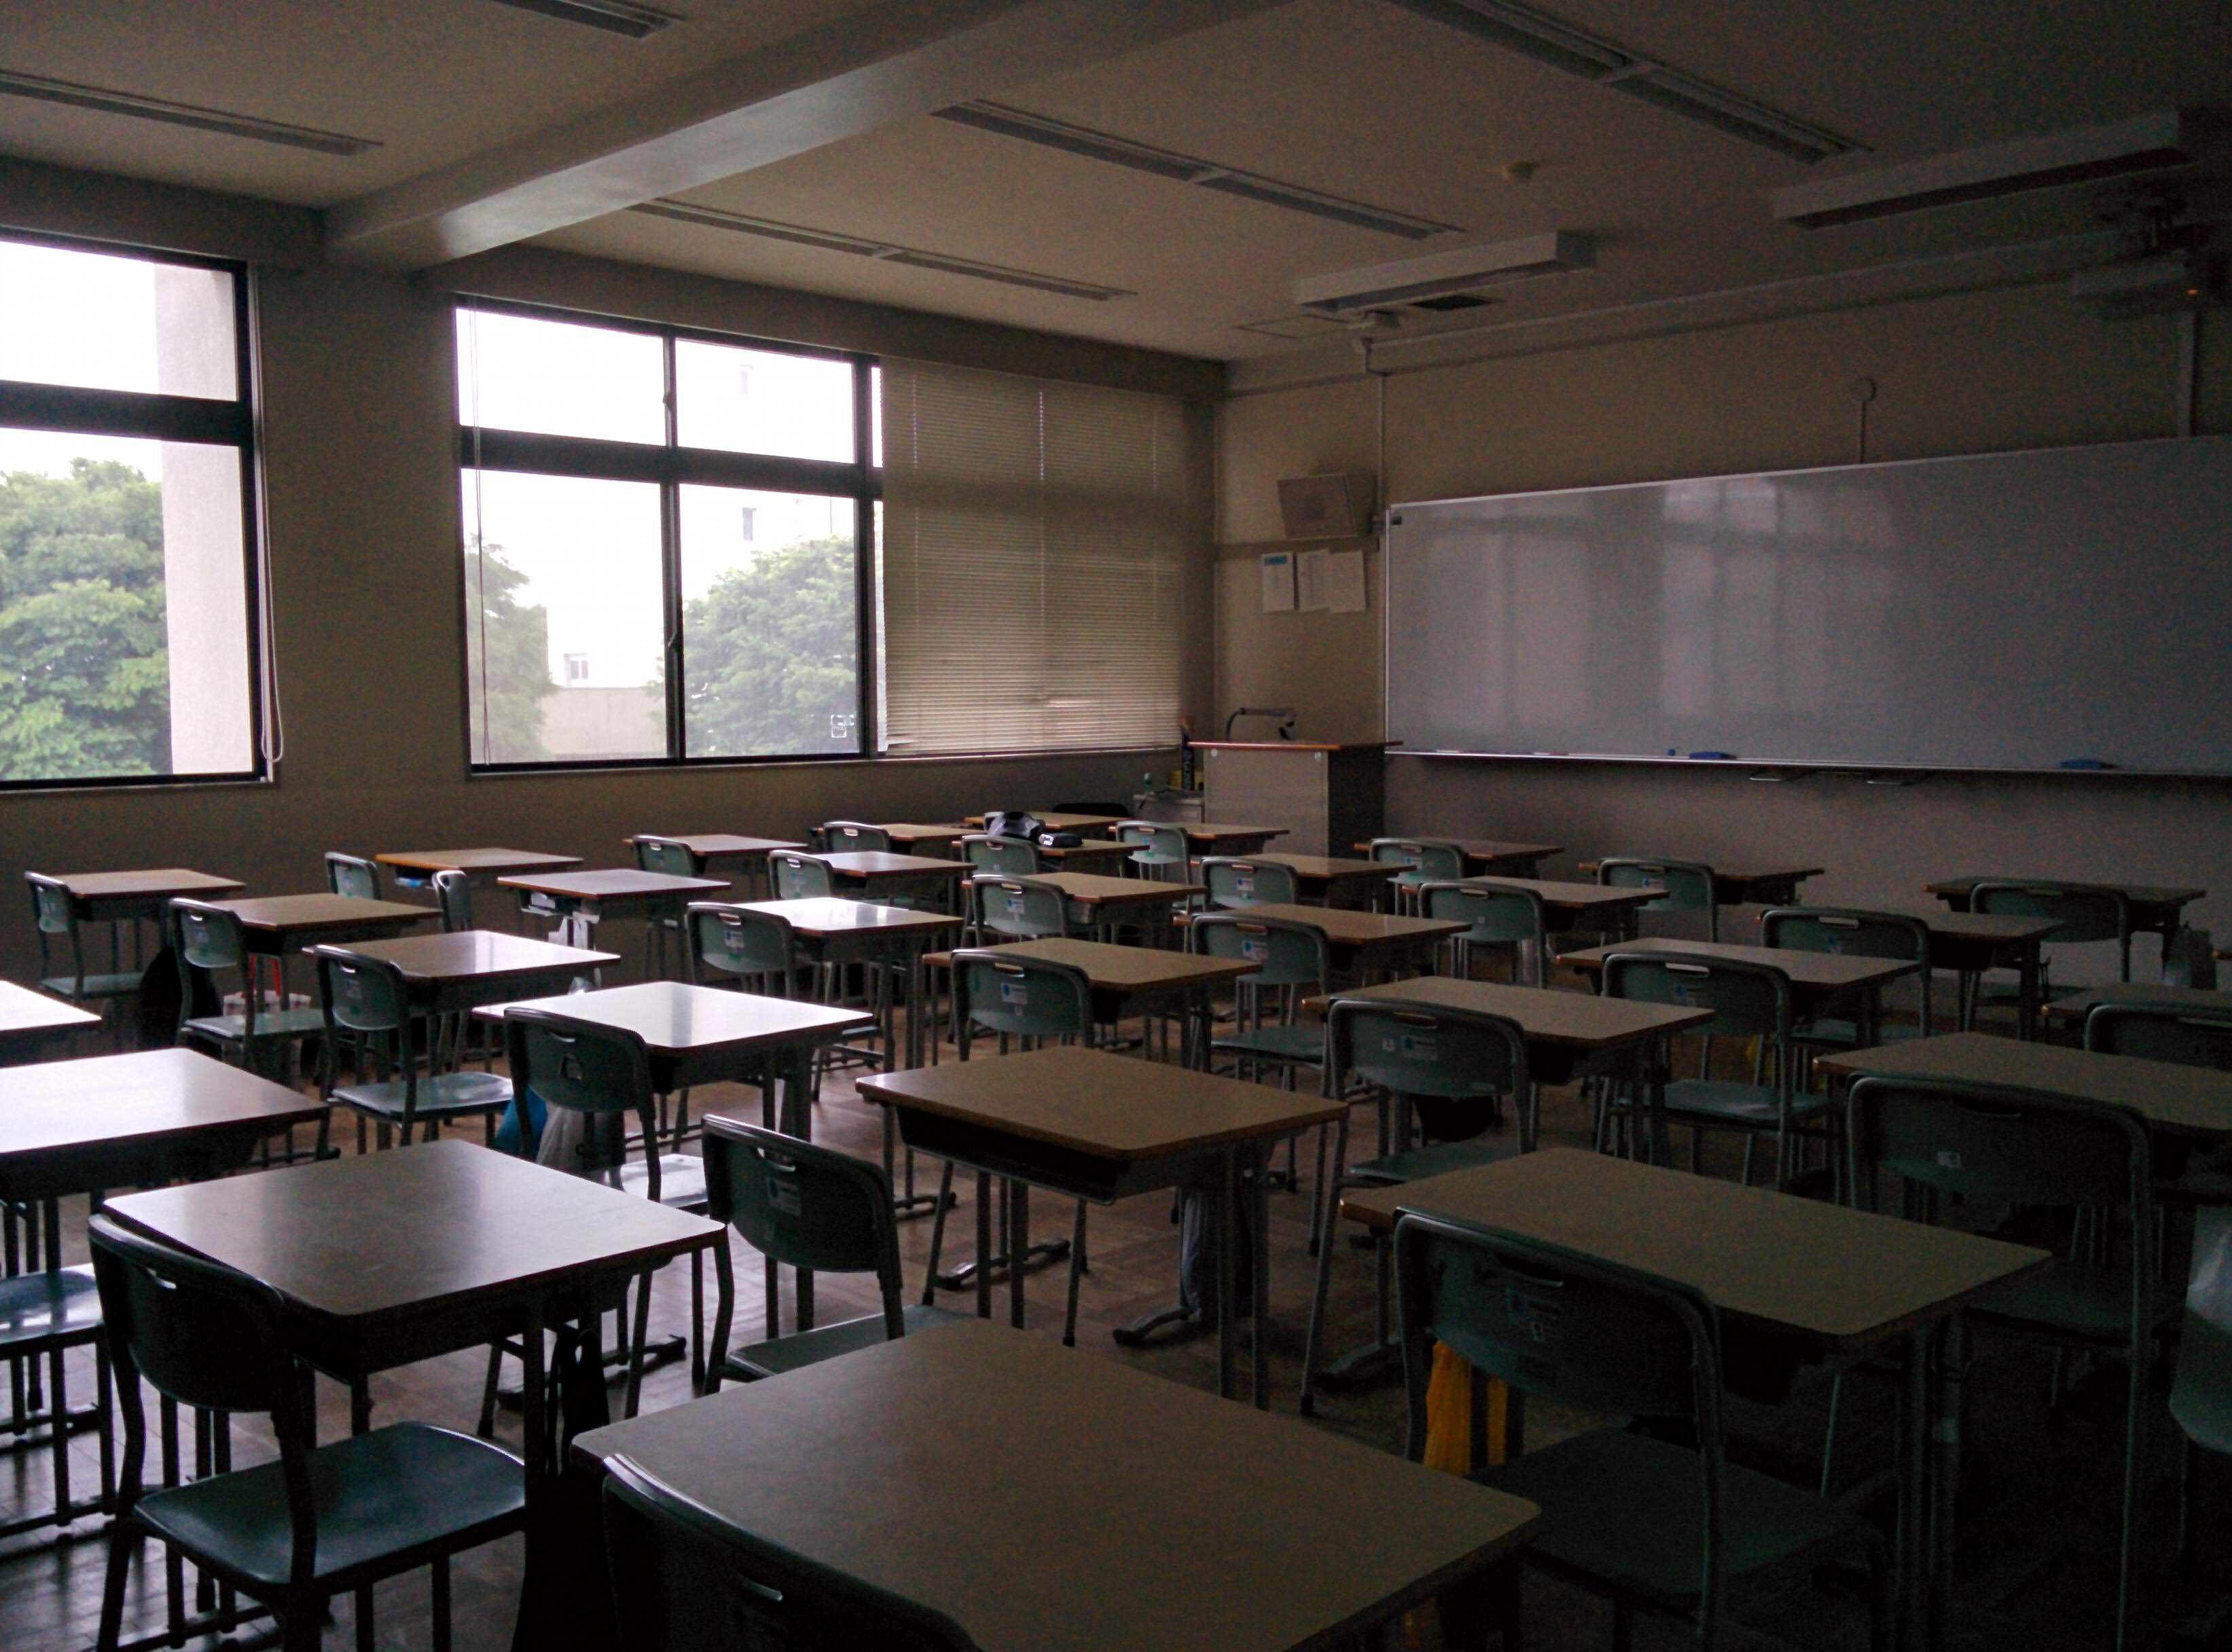 สภาพห้องเรียนครับ ห้องเรียนทั่วไปนะครับ ไม่ใช่ห้องที่พวกผมใช้เรียนภาษาญี่ปุ่นหรือทำกิจกรรม